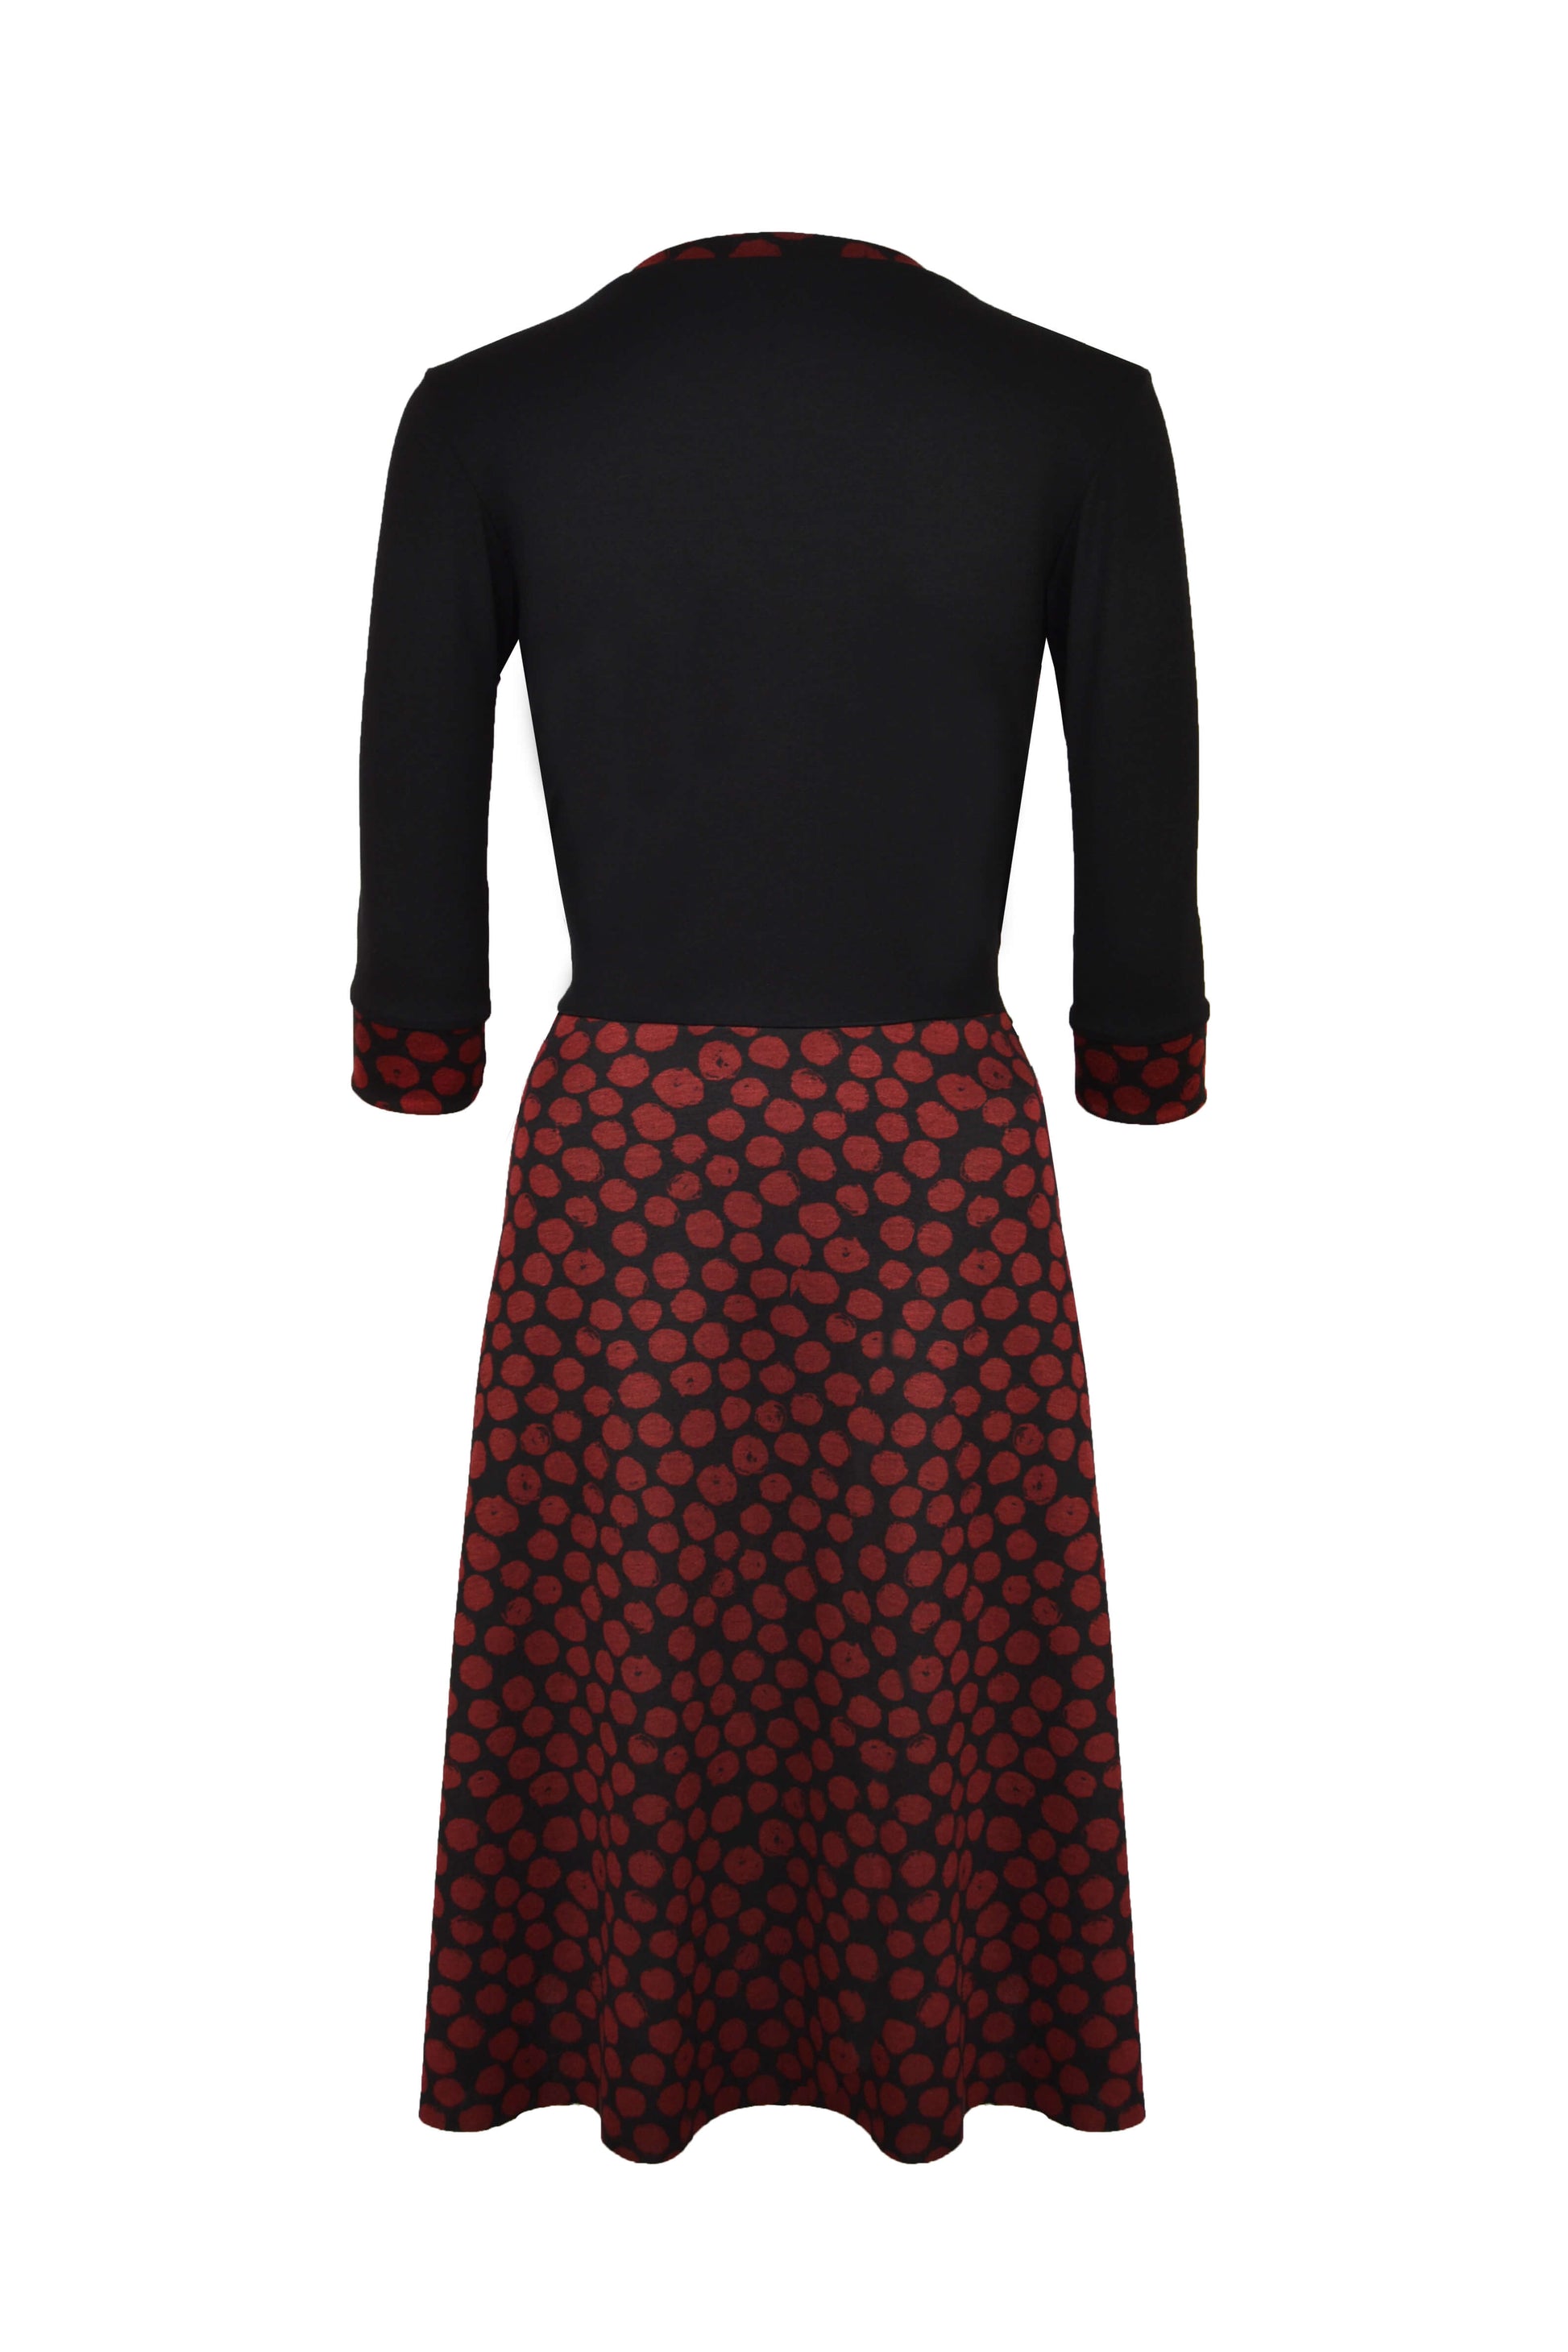 Elegantes Kleid aus Jersey in schwarz mit roten Punkten und V-Ausschnitt von LA.LUKA Berlin in der Rückansicht.